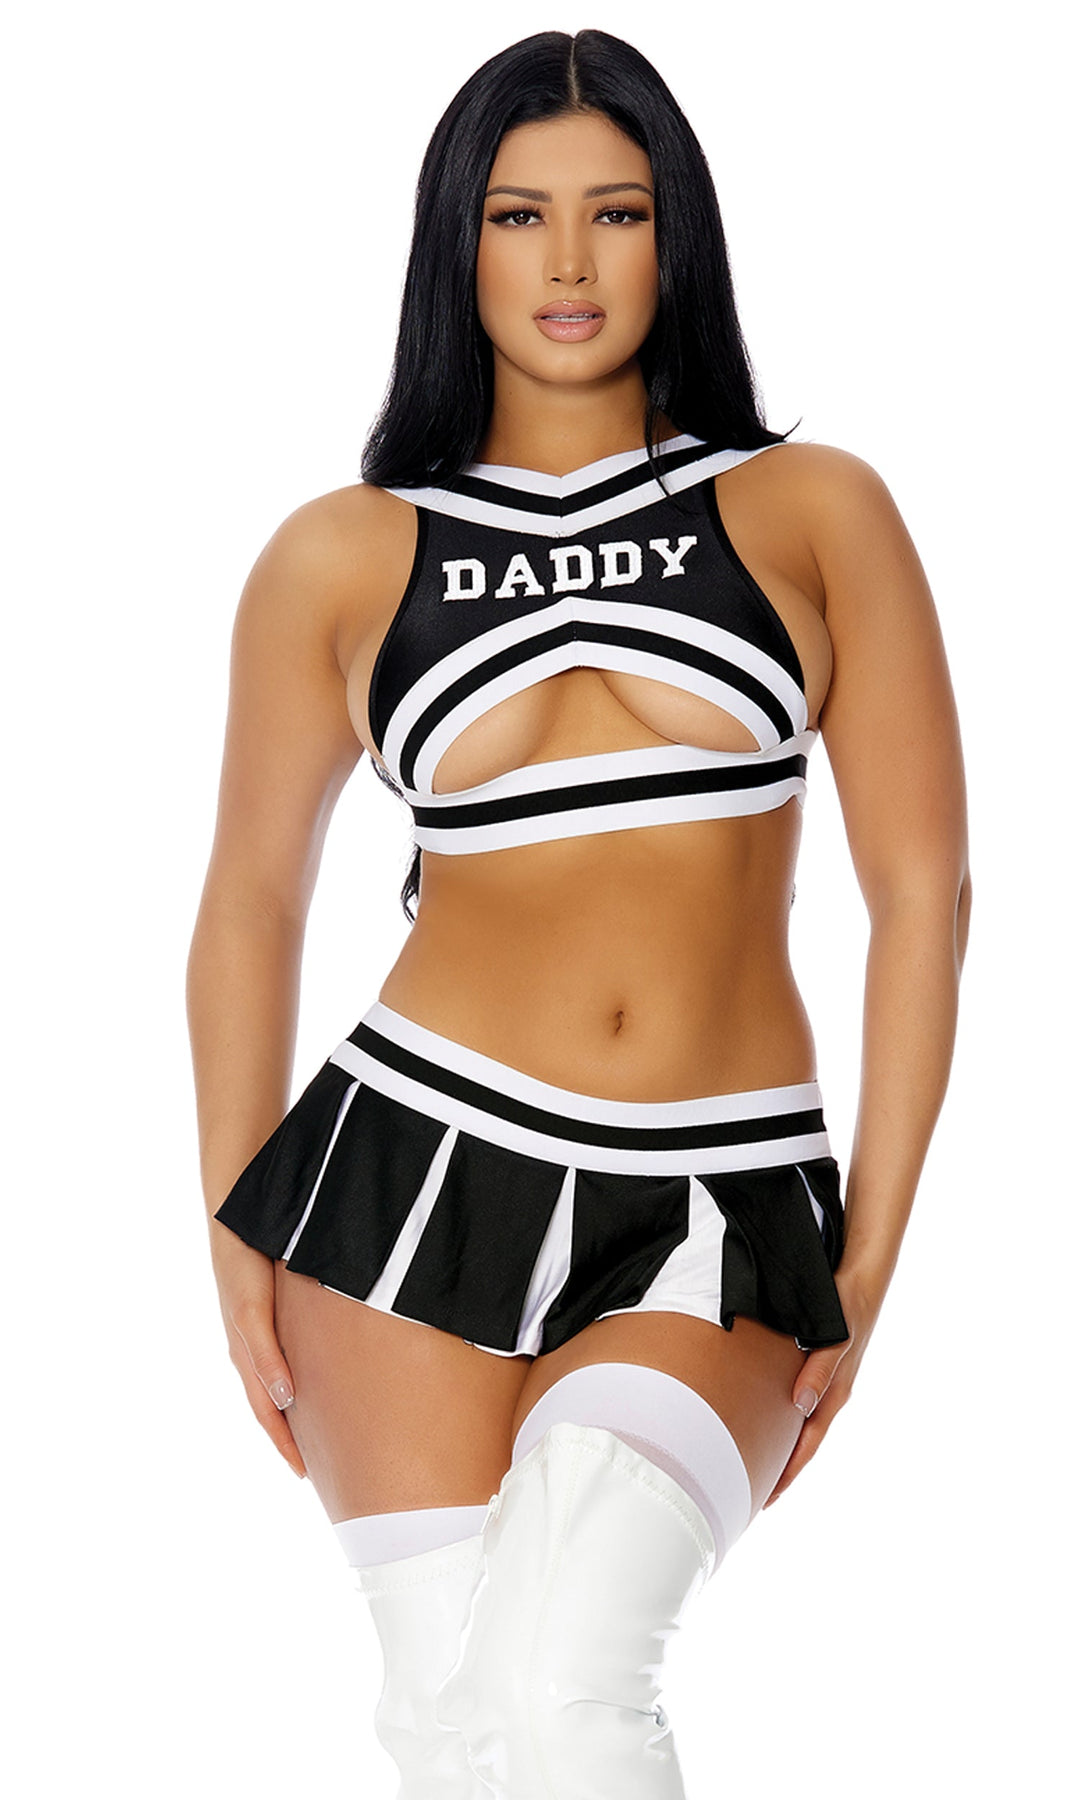 Best of Sexy cheerleader images